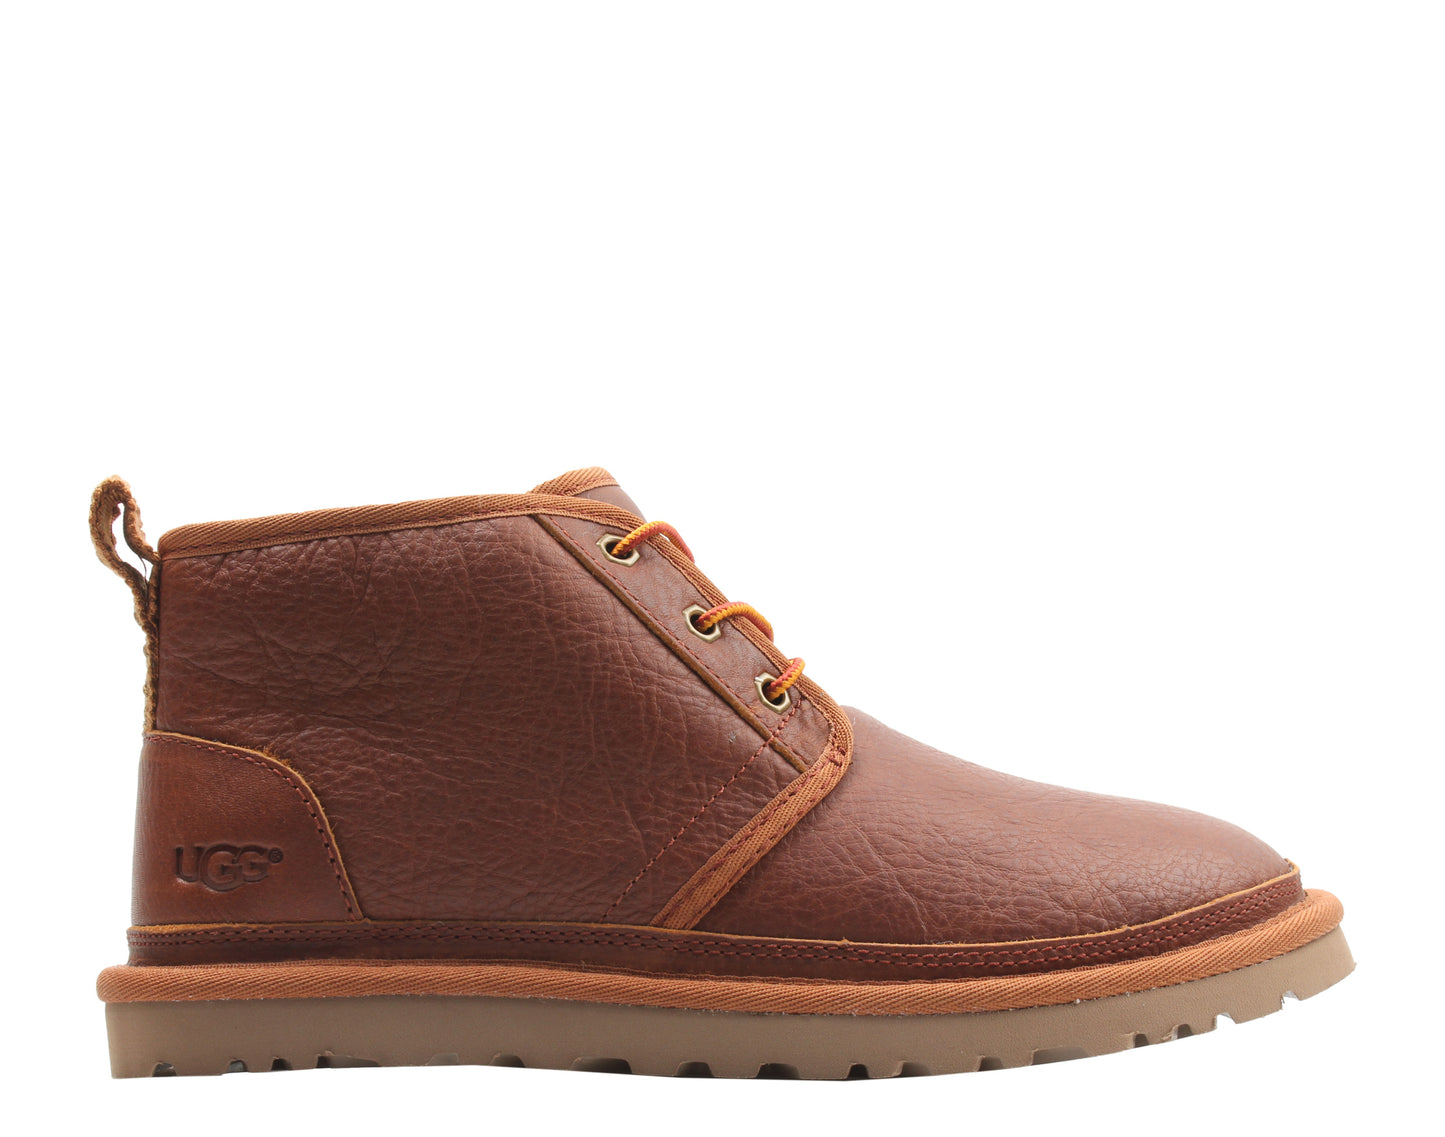 UGG Australia Neumel Leather Chestnut Men's Boot 1095350-CHE